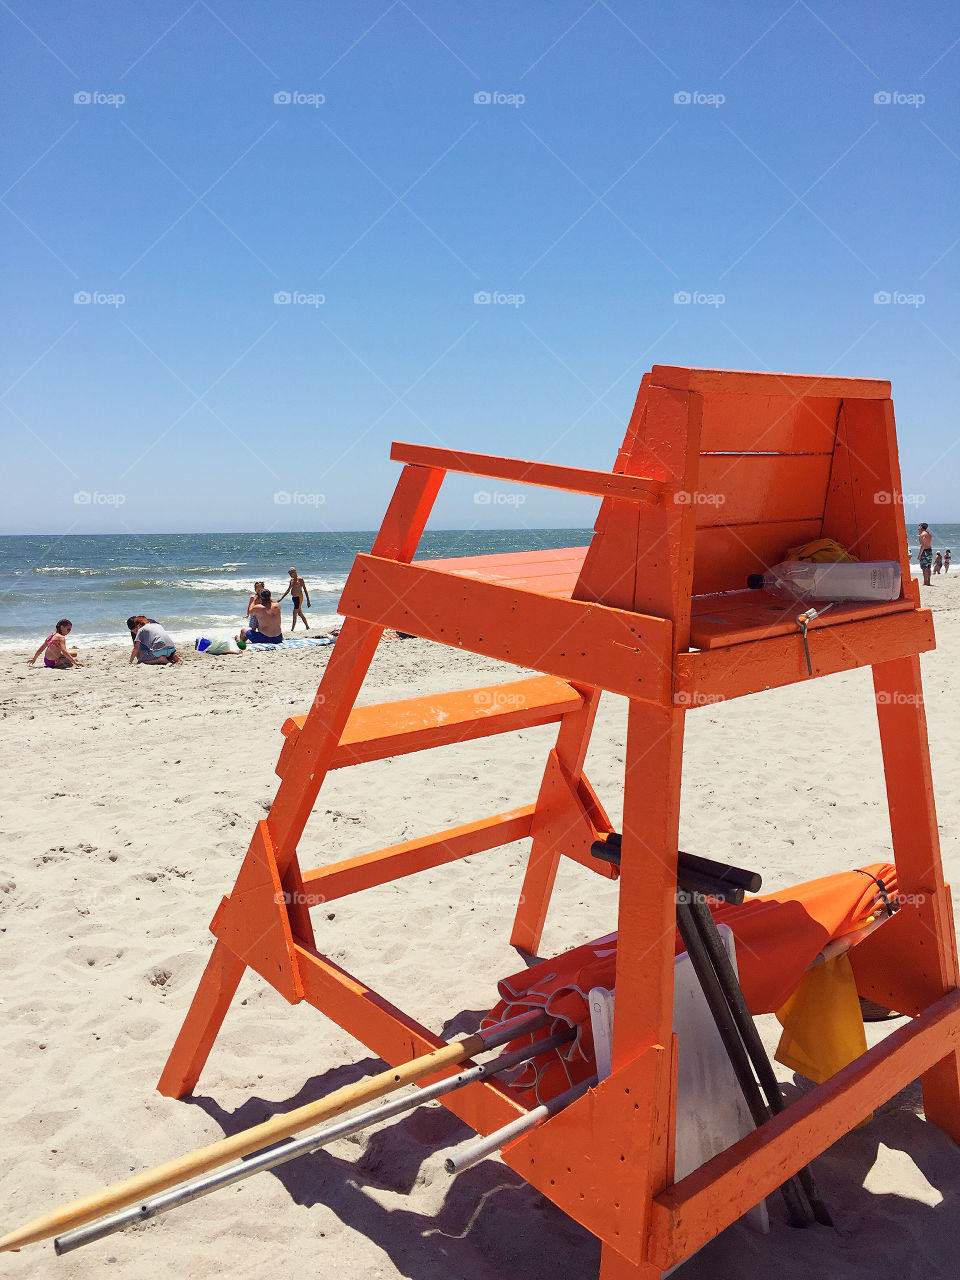 Orange lifeguard chair at the beach. 